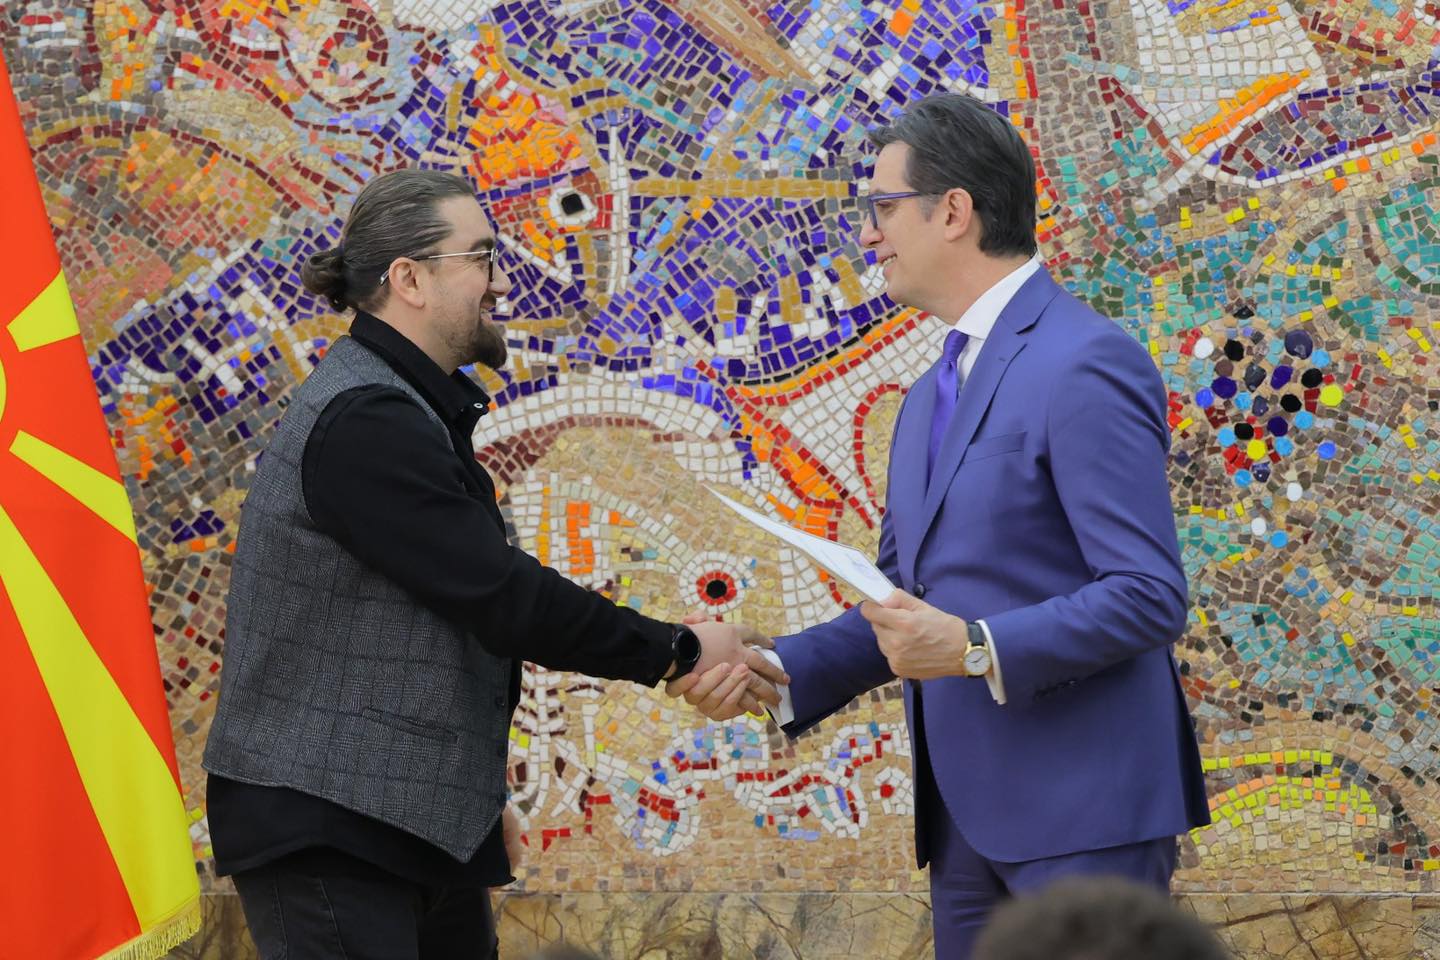 Presidenti i Maqedonisë ndau çmimet “Të rinjtë e suksesshëm”, shqiptari Qëndrim Rijani mirënjohje për arritjet në kulturë